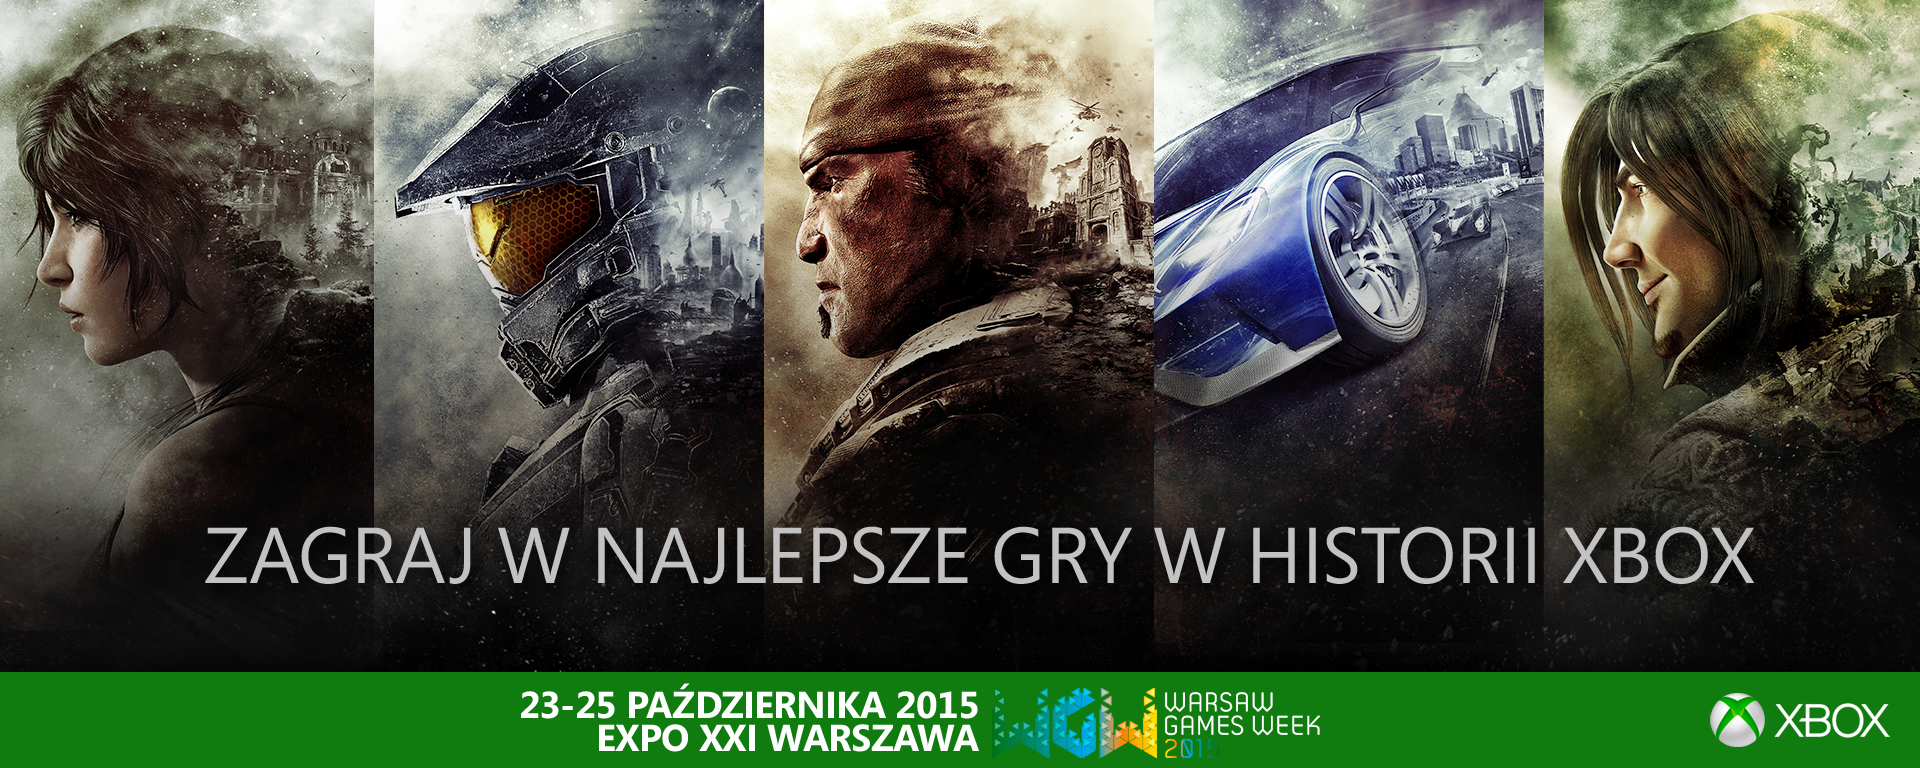 Najlepsze gry Xbox Warsaw Games Week